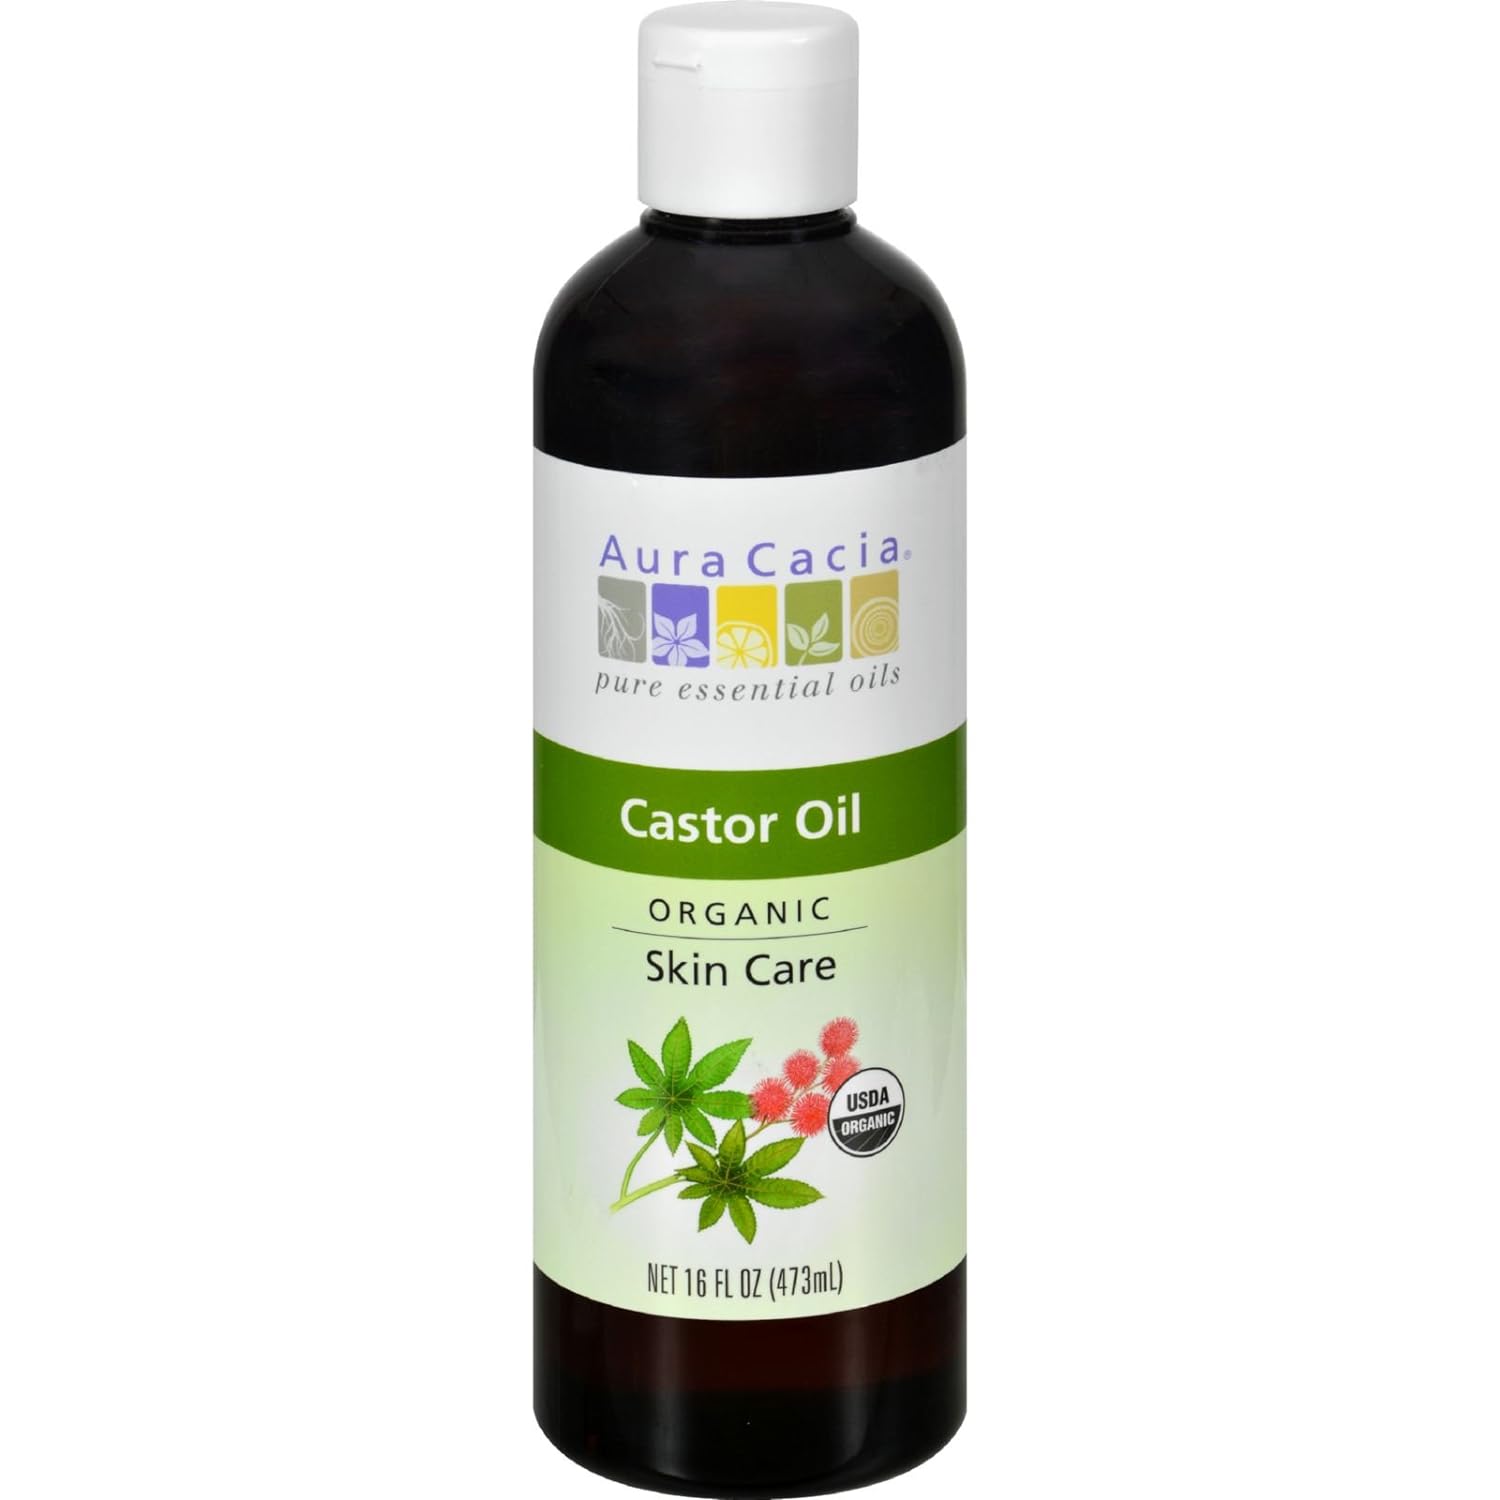 Aura Cacia Skin Care Castor Oil Org